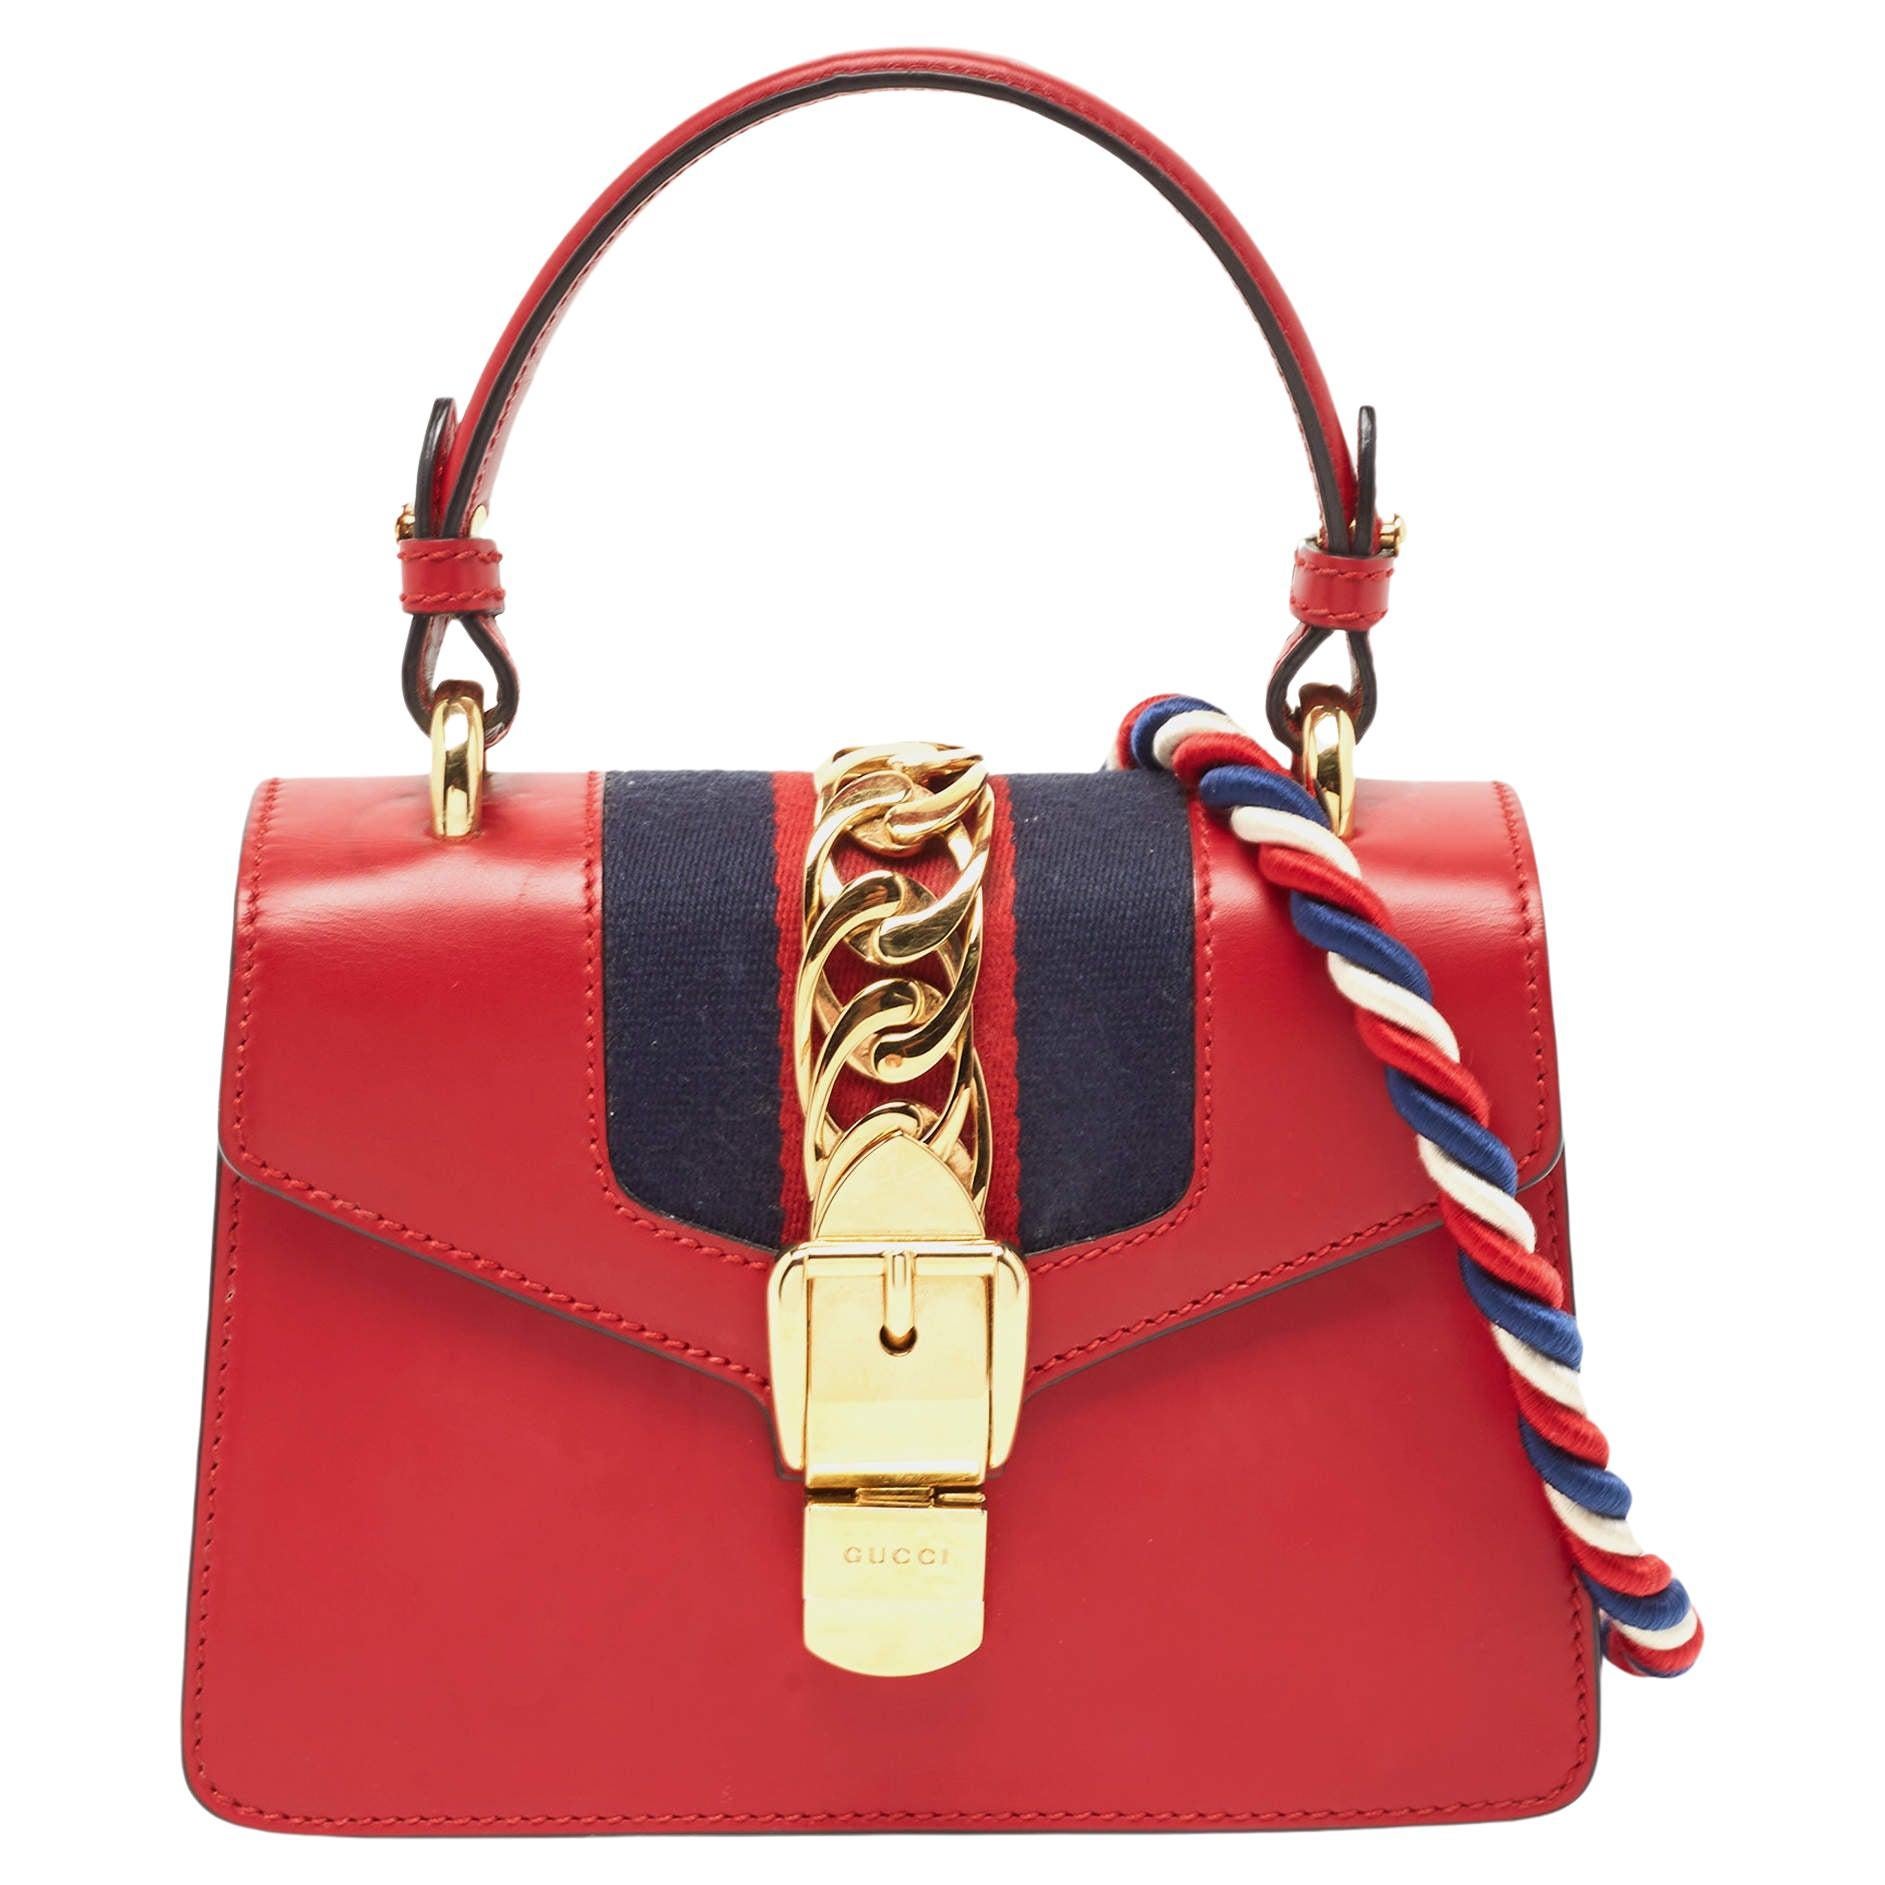 Gucci Sylvie Top Handtasche aus rotem Leder mit Mini-Webkette